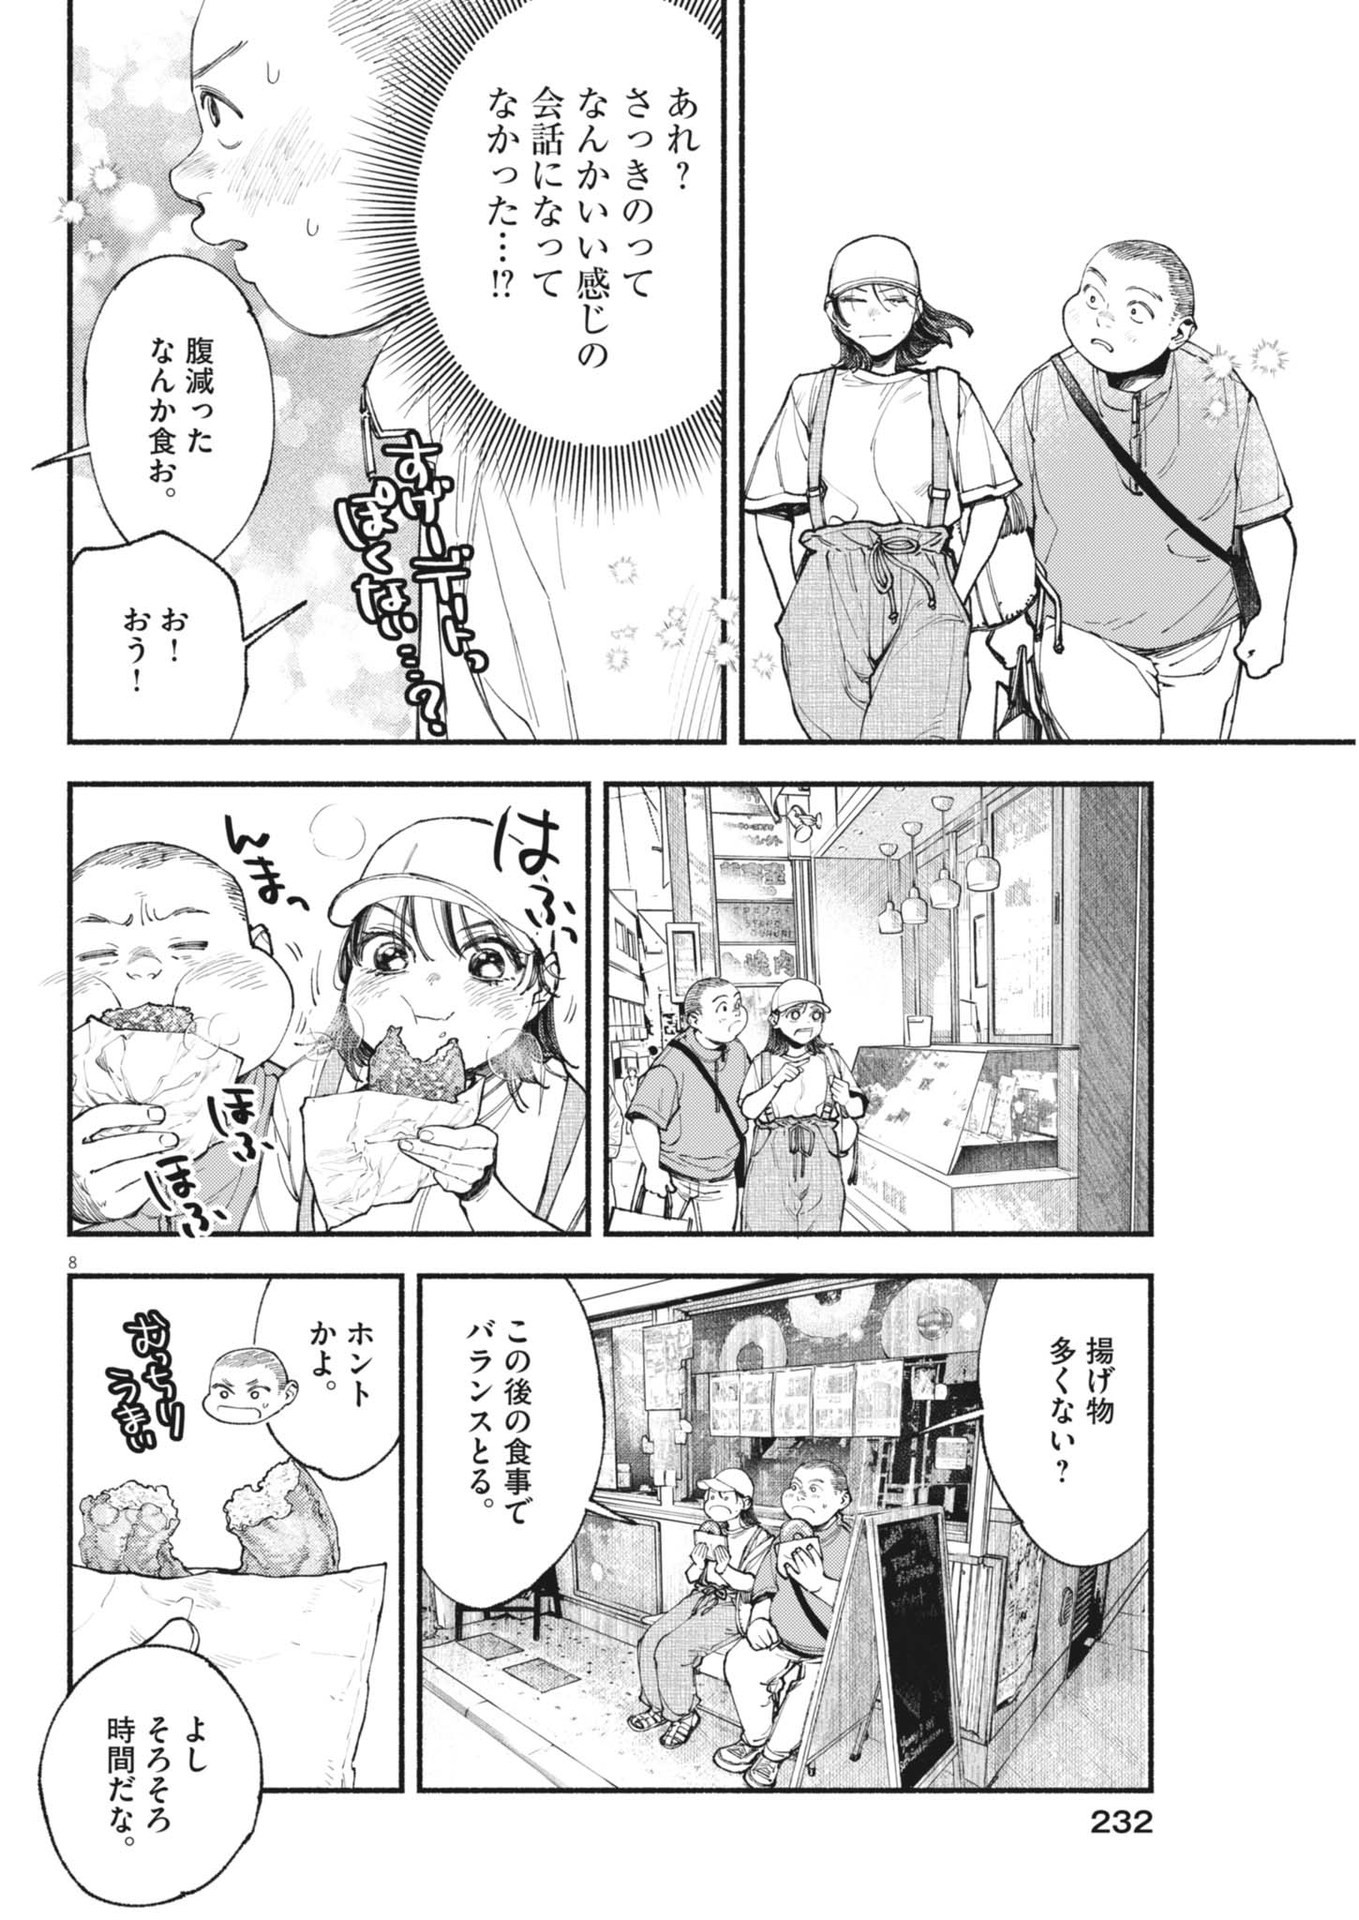 Konoyo wa Tatakau Kachi ga Aru  - Chapter 27 - Page 8